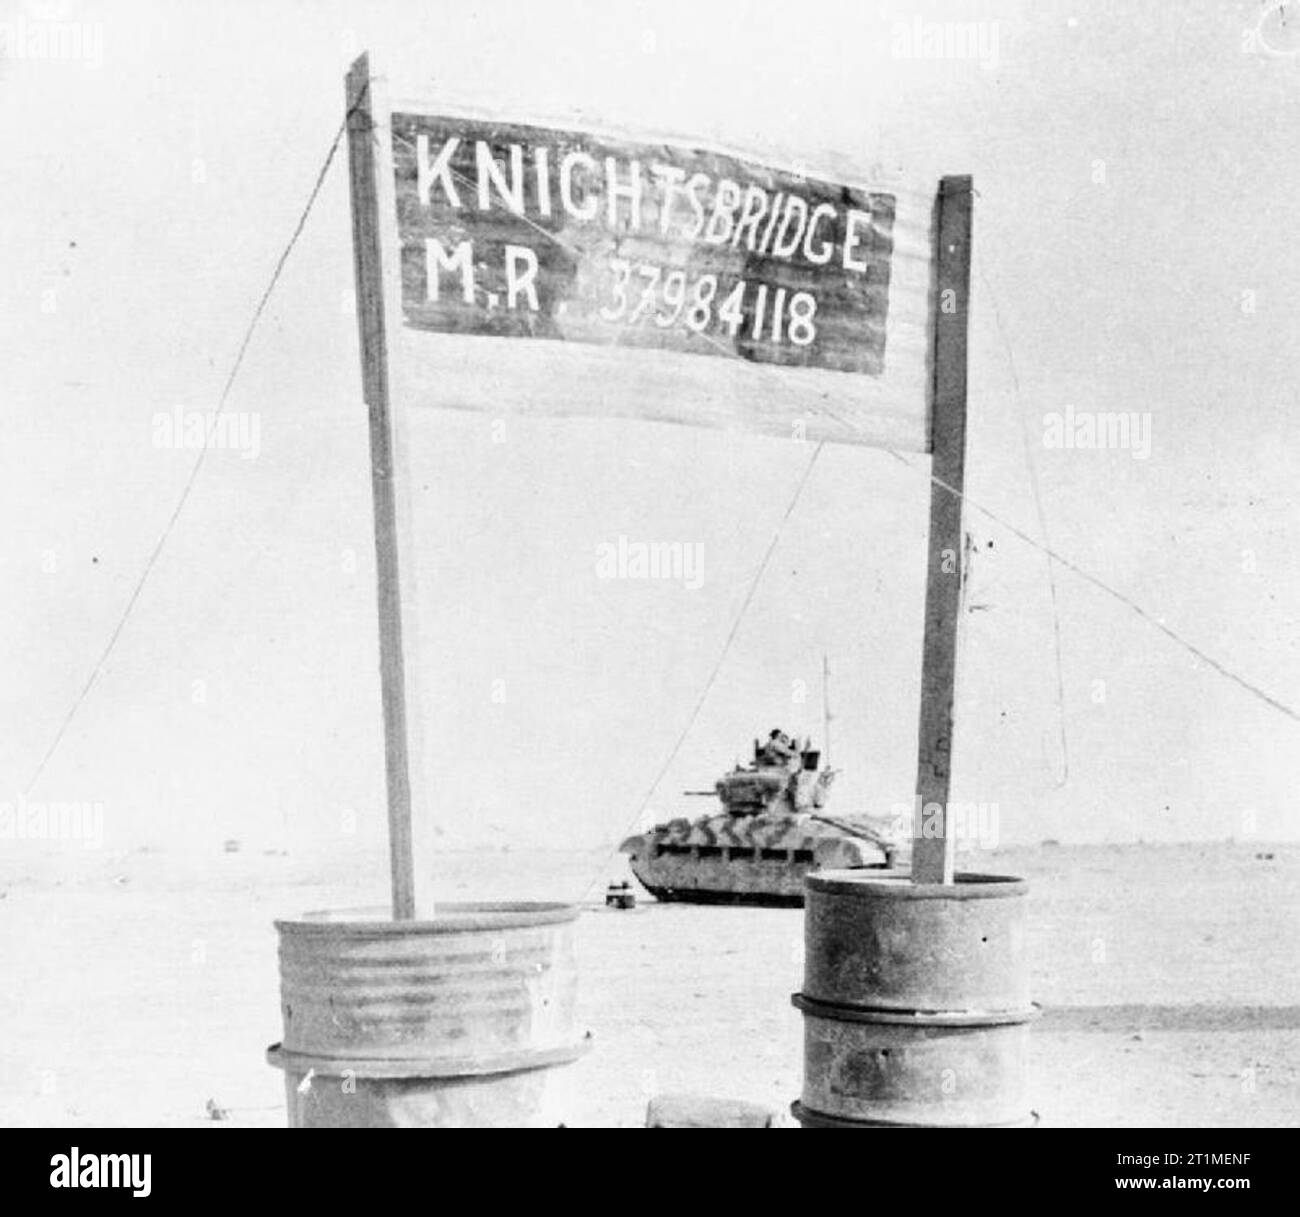 La campagne en Afrique du Nord 1940-1943 l'offensive de l'axe 1941 - 1942 : Un Matilda britannique réservoir passe l 'Knightsbridge' la jonction de route peu après la grande bataille de chars il y a au cours de la bataille de Gazala. Banque D'Images